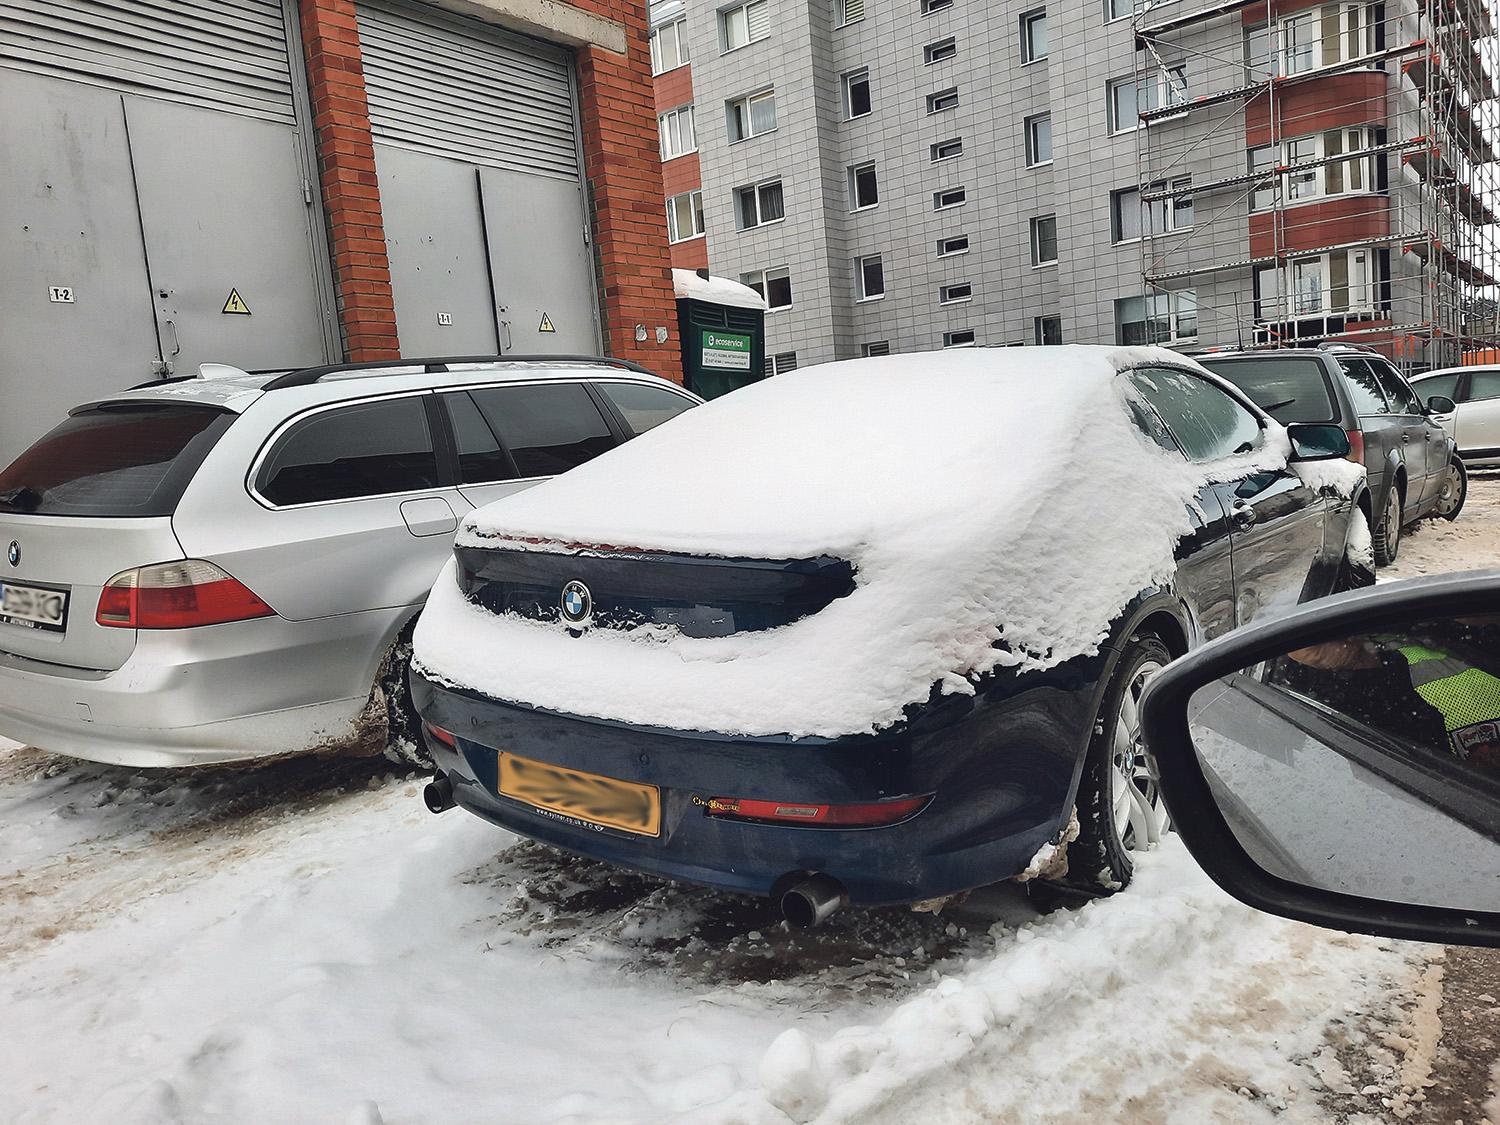 Be priežiūros palikti automobiliai turės dingti iš kiemų ir gatvių / Ukmergės rajono savivaldybės administracija